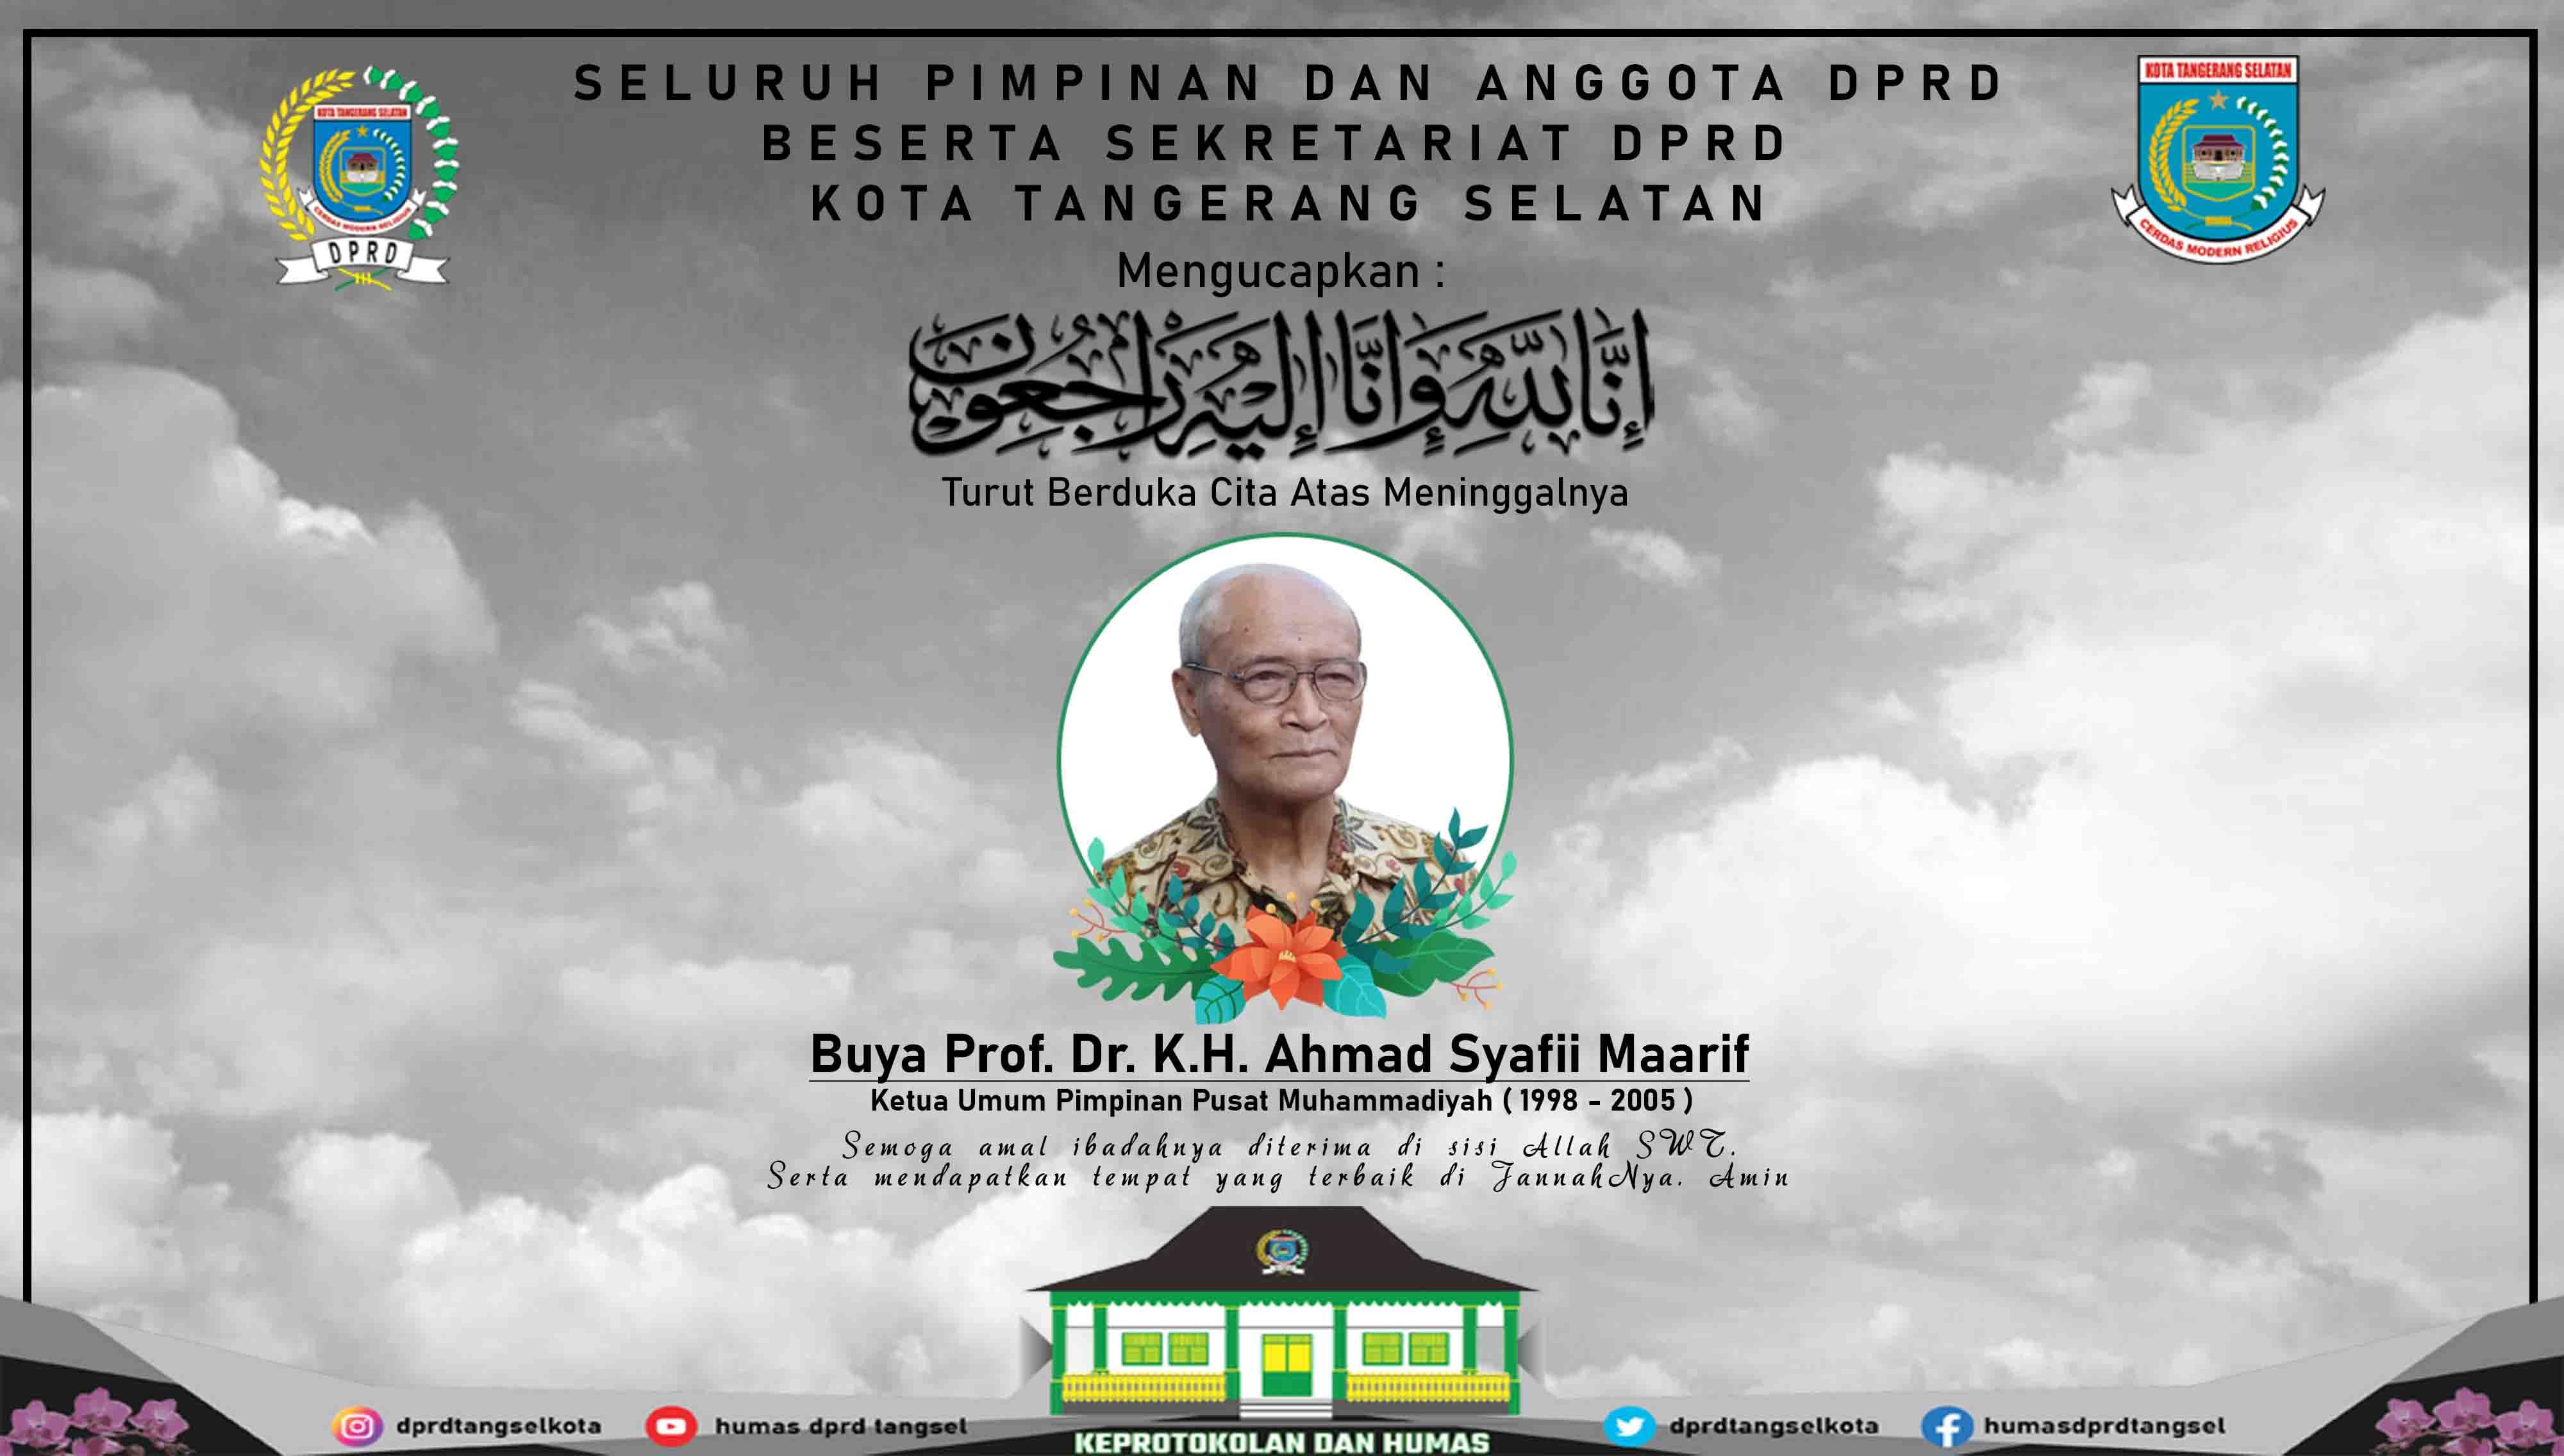 Turut Berduka Cita Atas Wafatnya Buya Prof. Dr. H. Ahmad Syafii Maarif